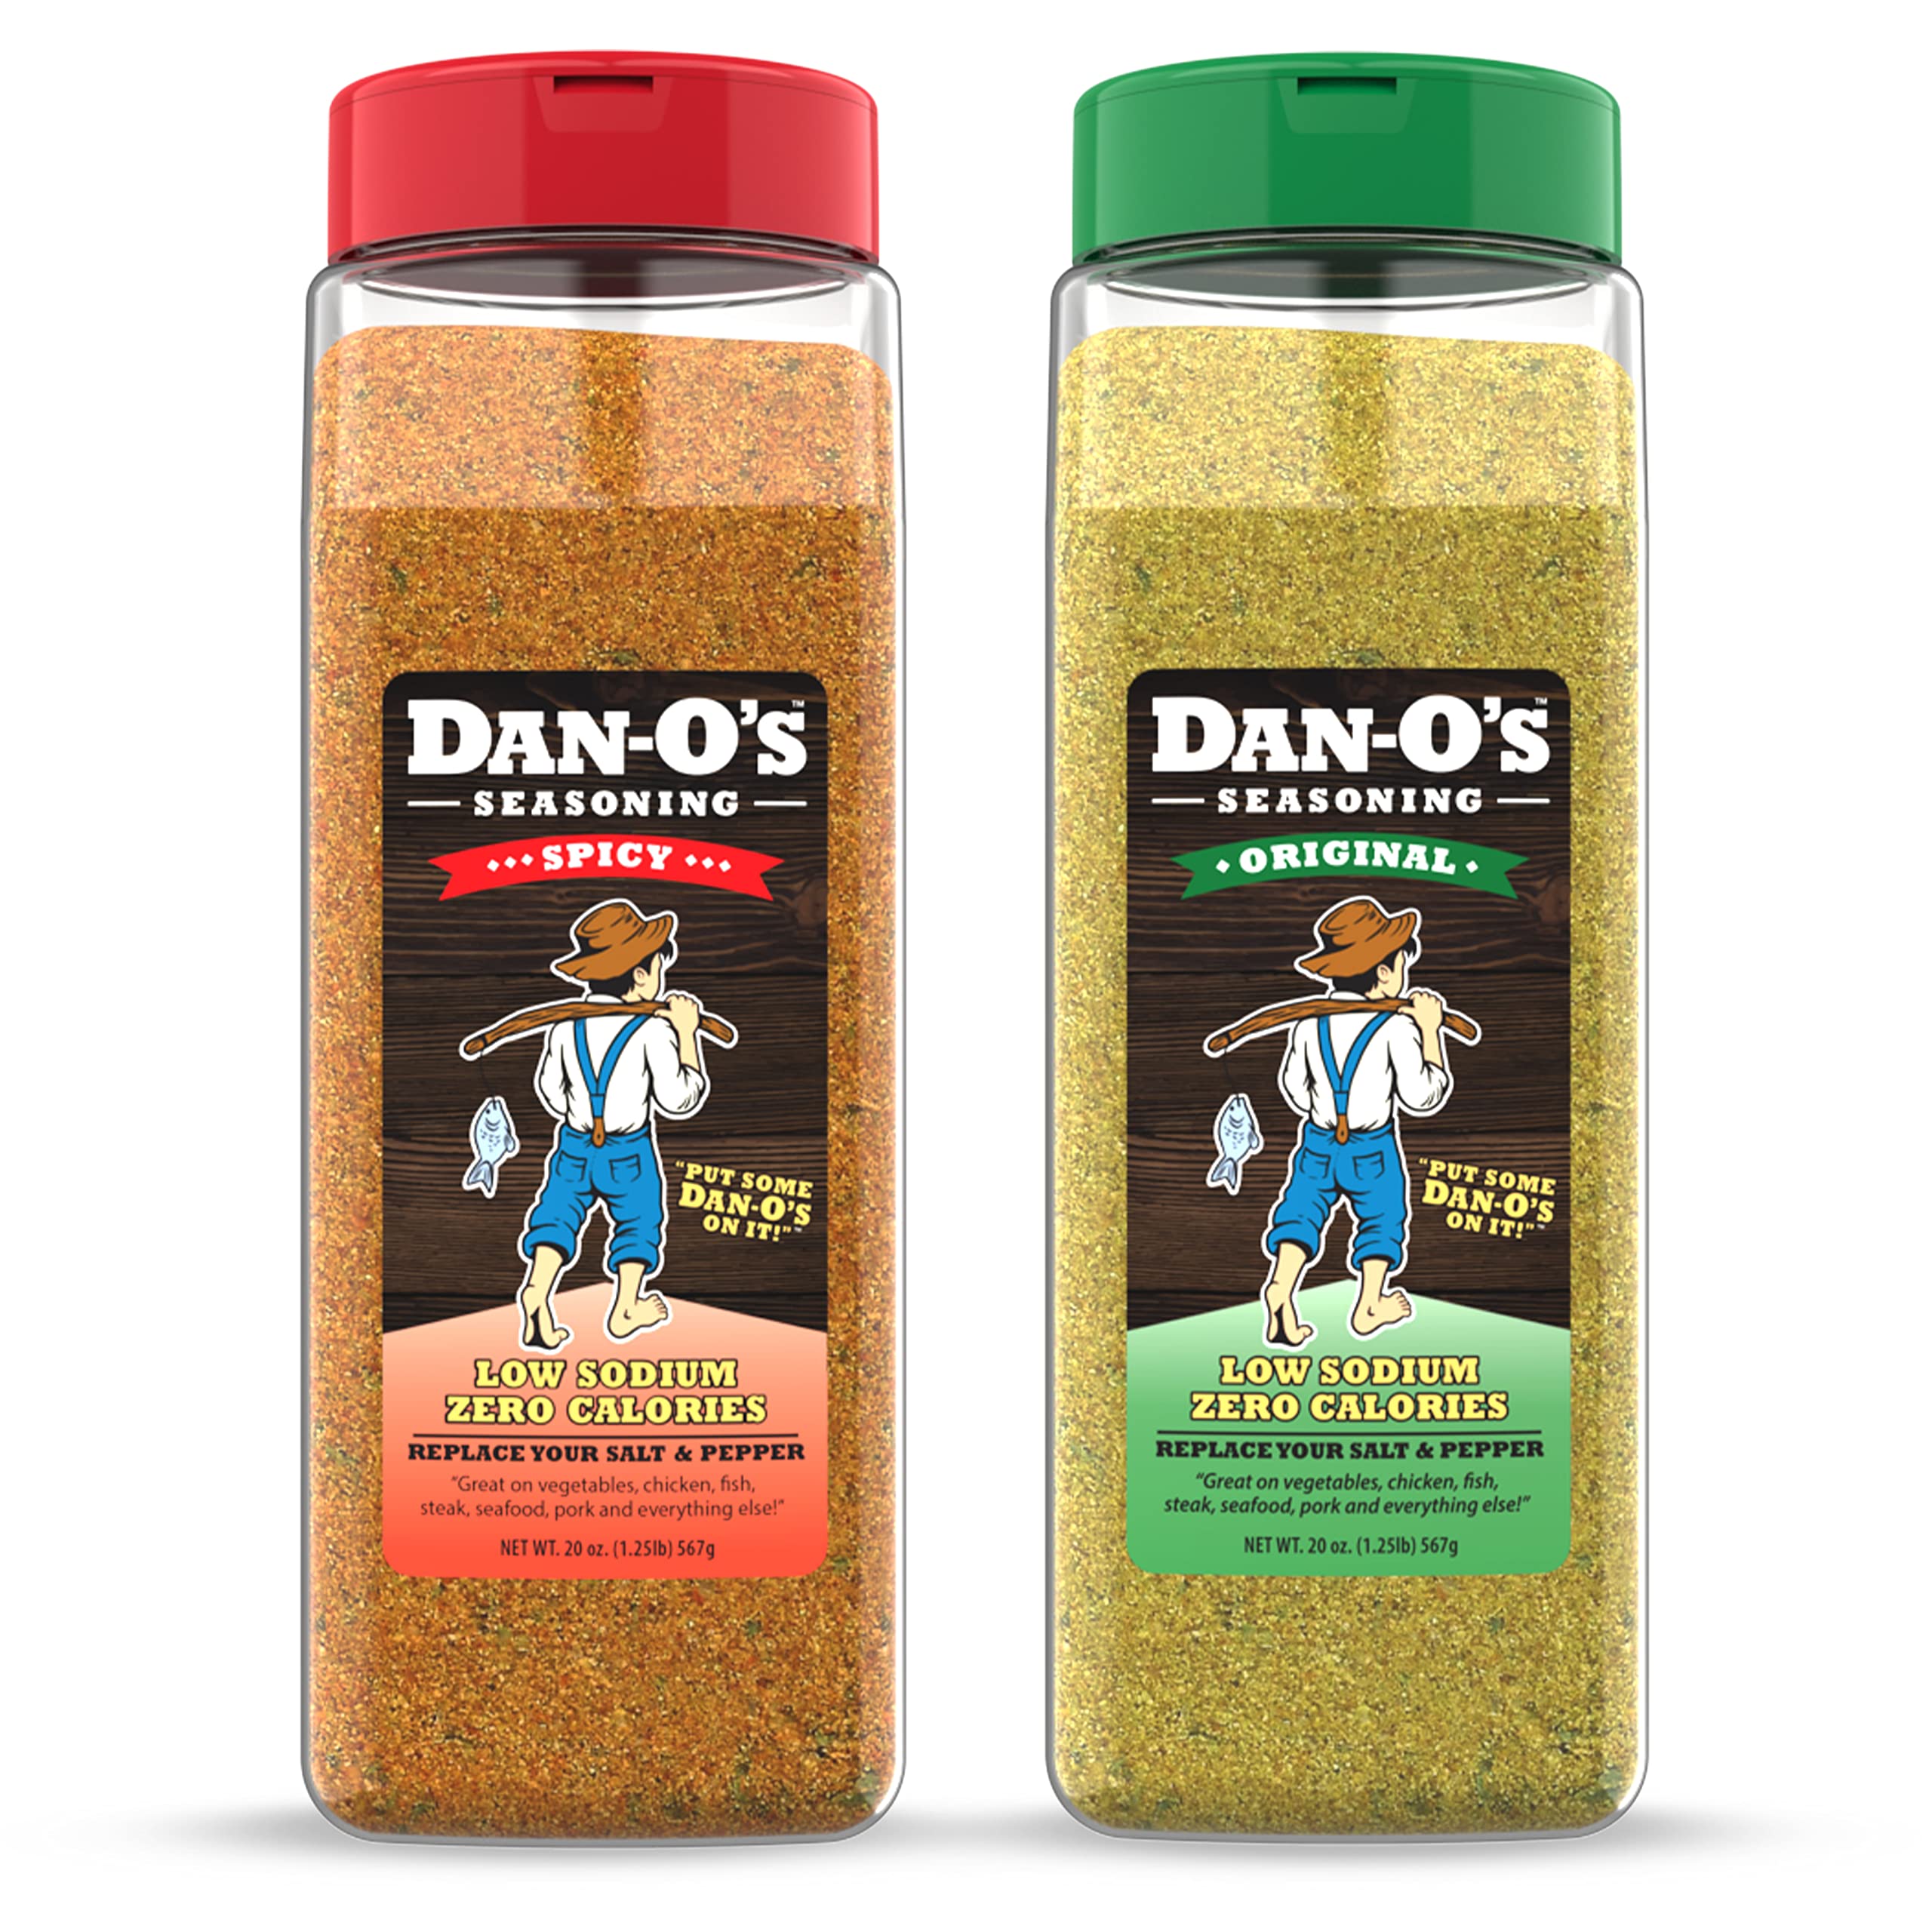 Dan-O's Original Seasoning, All Natural, Sugar Free, Keto, All Purpose  Seasonings, Vegetable Seasoning, Meat Seasoning, Low Sodium Seasoning, Cooking Spices